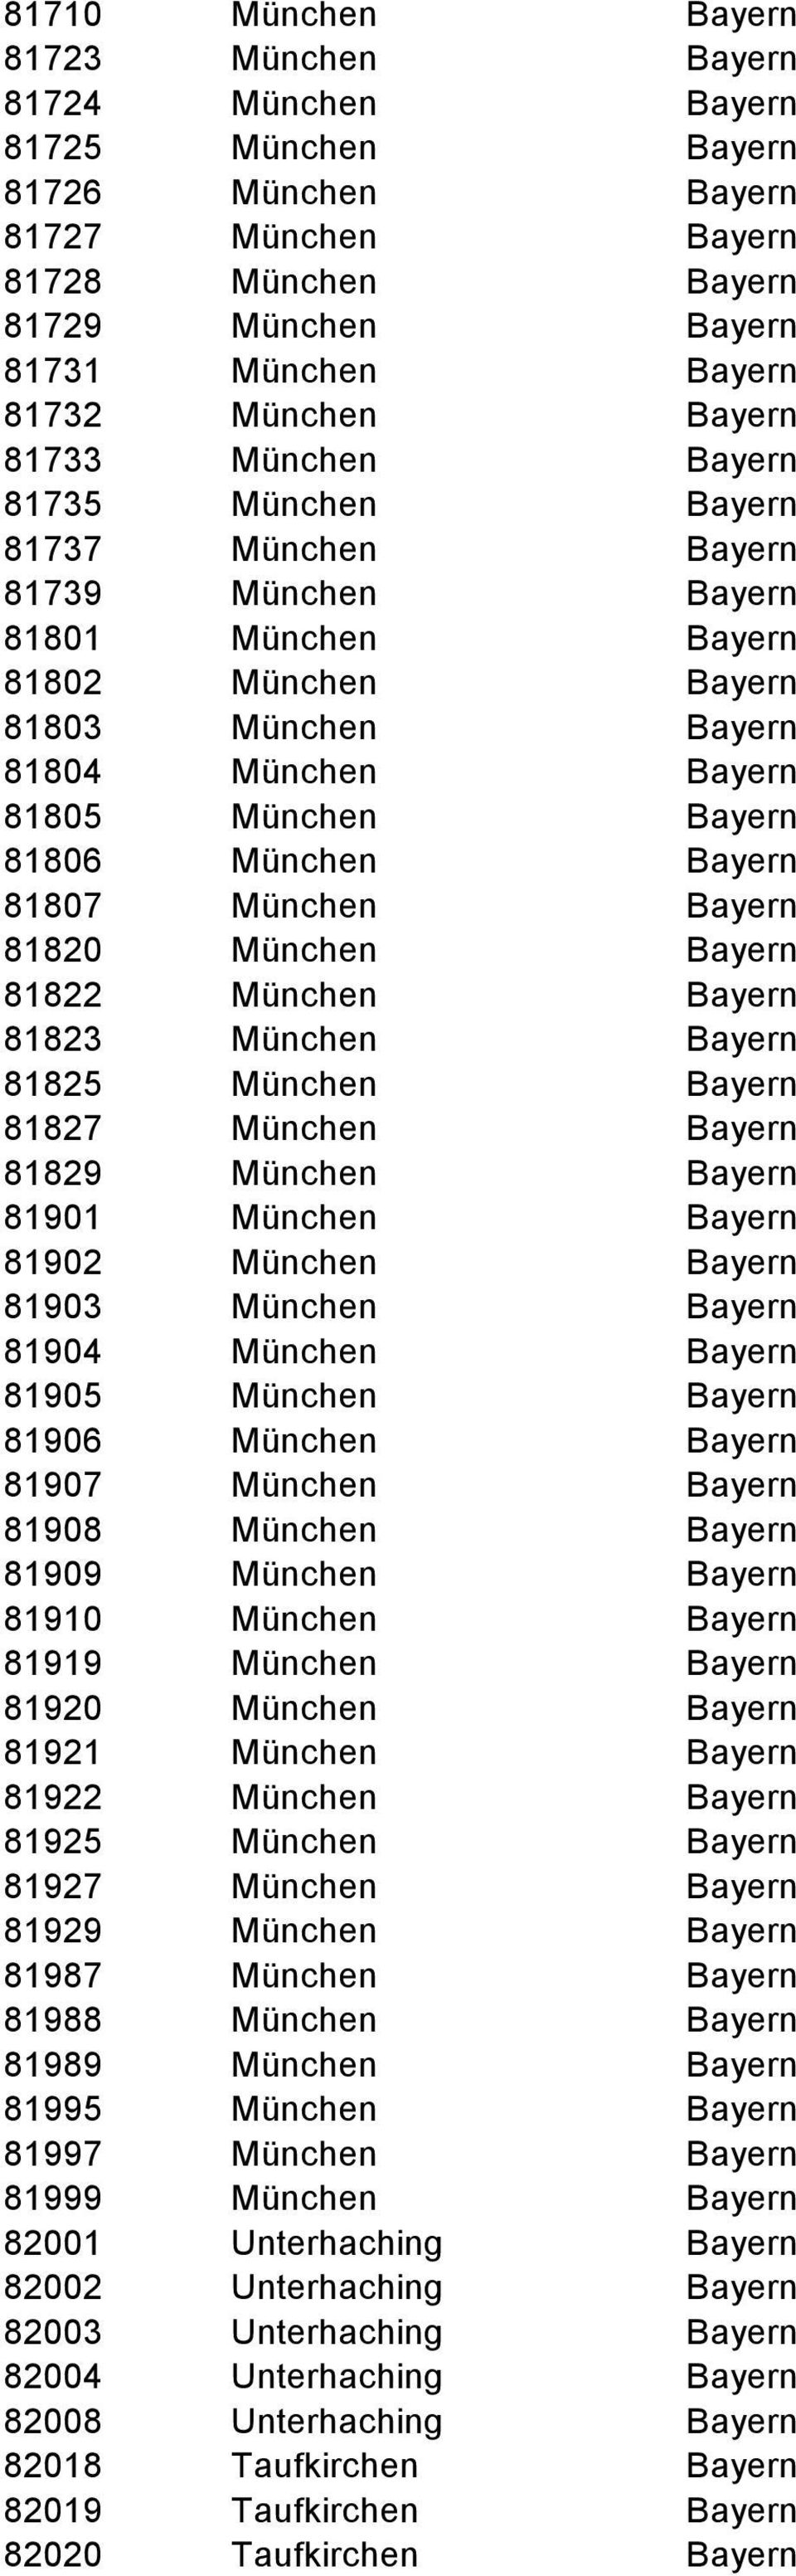 Bayern 81806 München Bayern 81807 München Bayern 81820 München Bayern 81822 München Bayern 81823 München Bayern 81825 München Bayern 81827 München Bayern 81829 München Bayern 81901 München Bayern